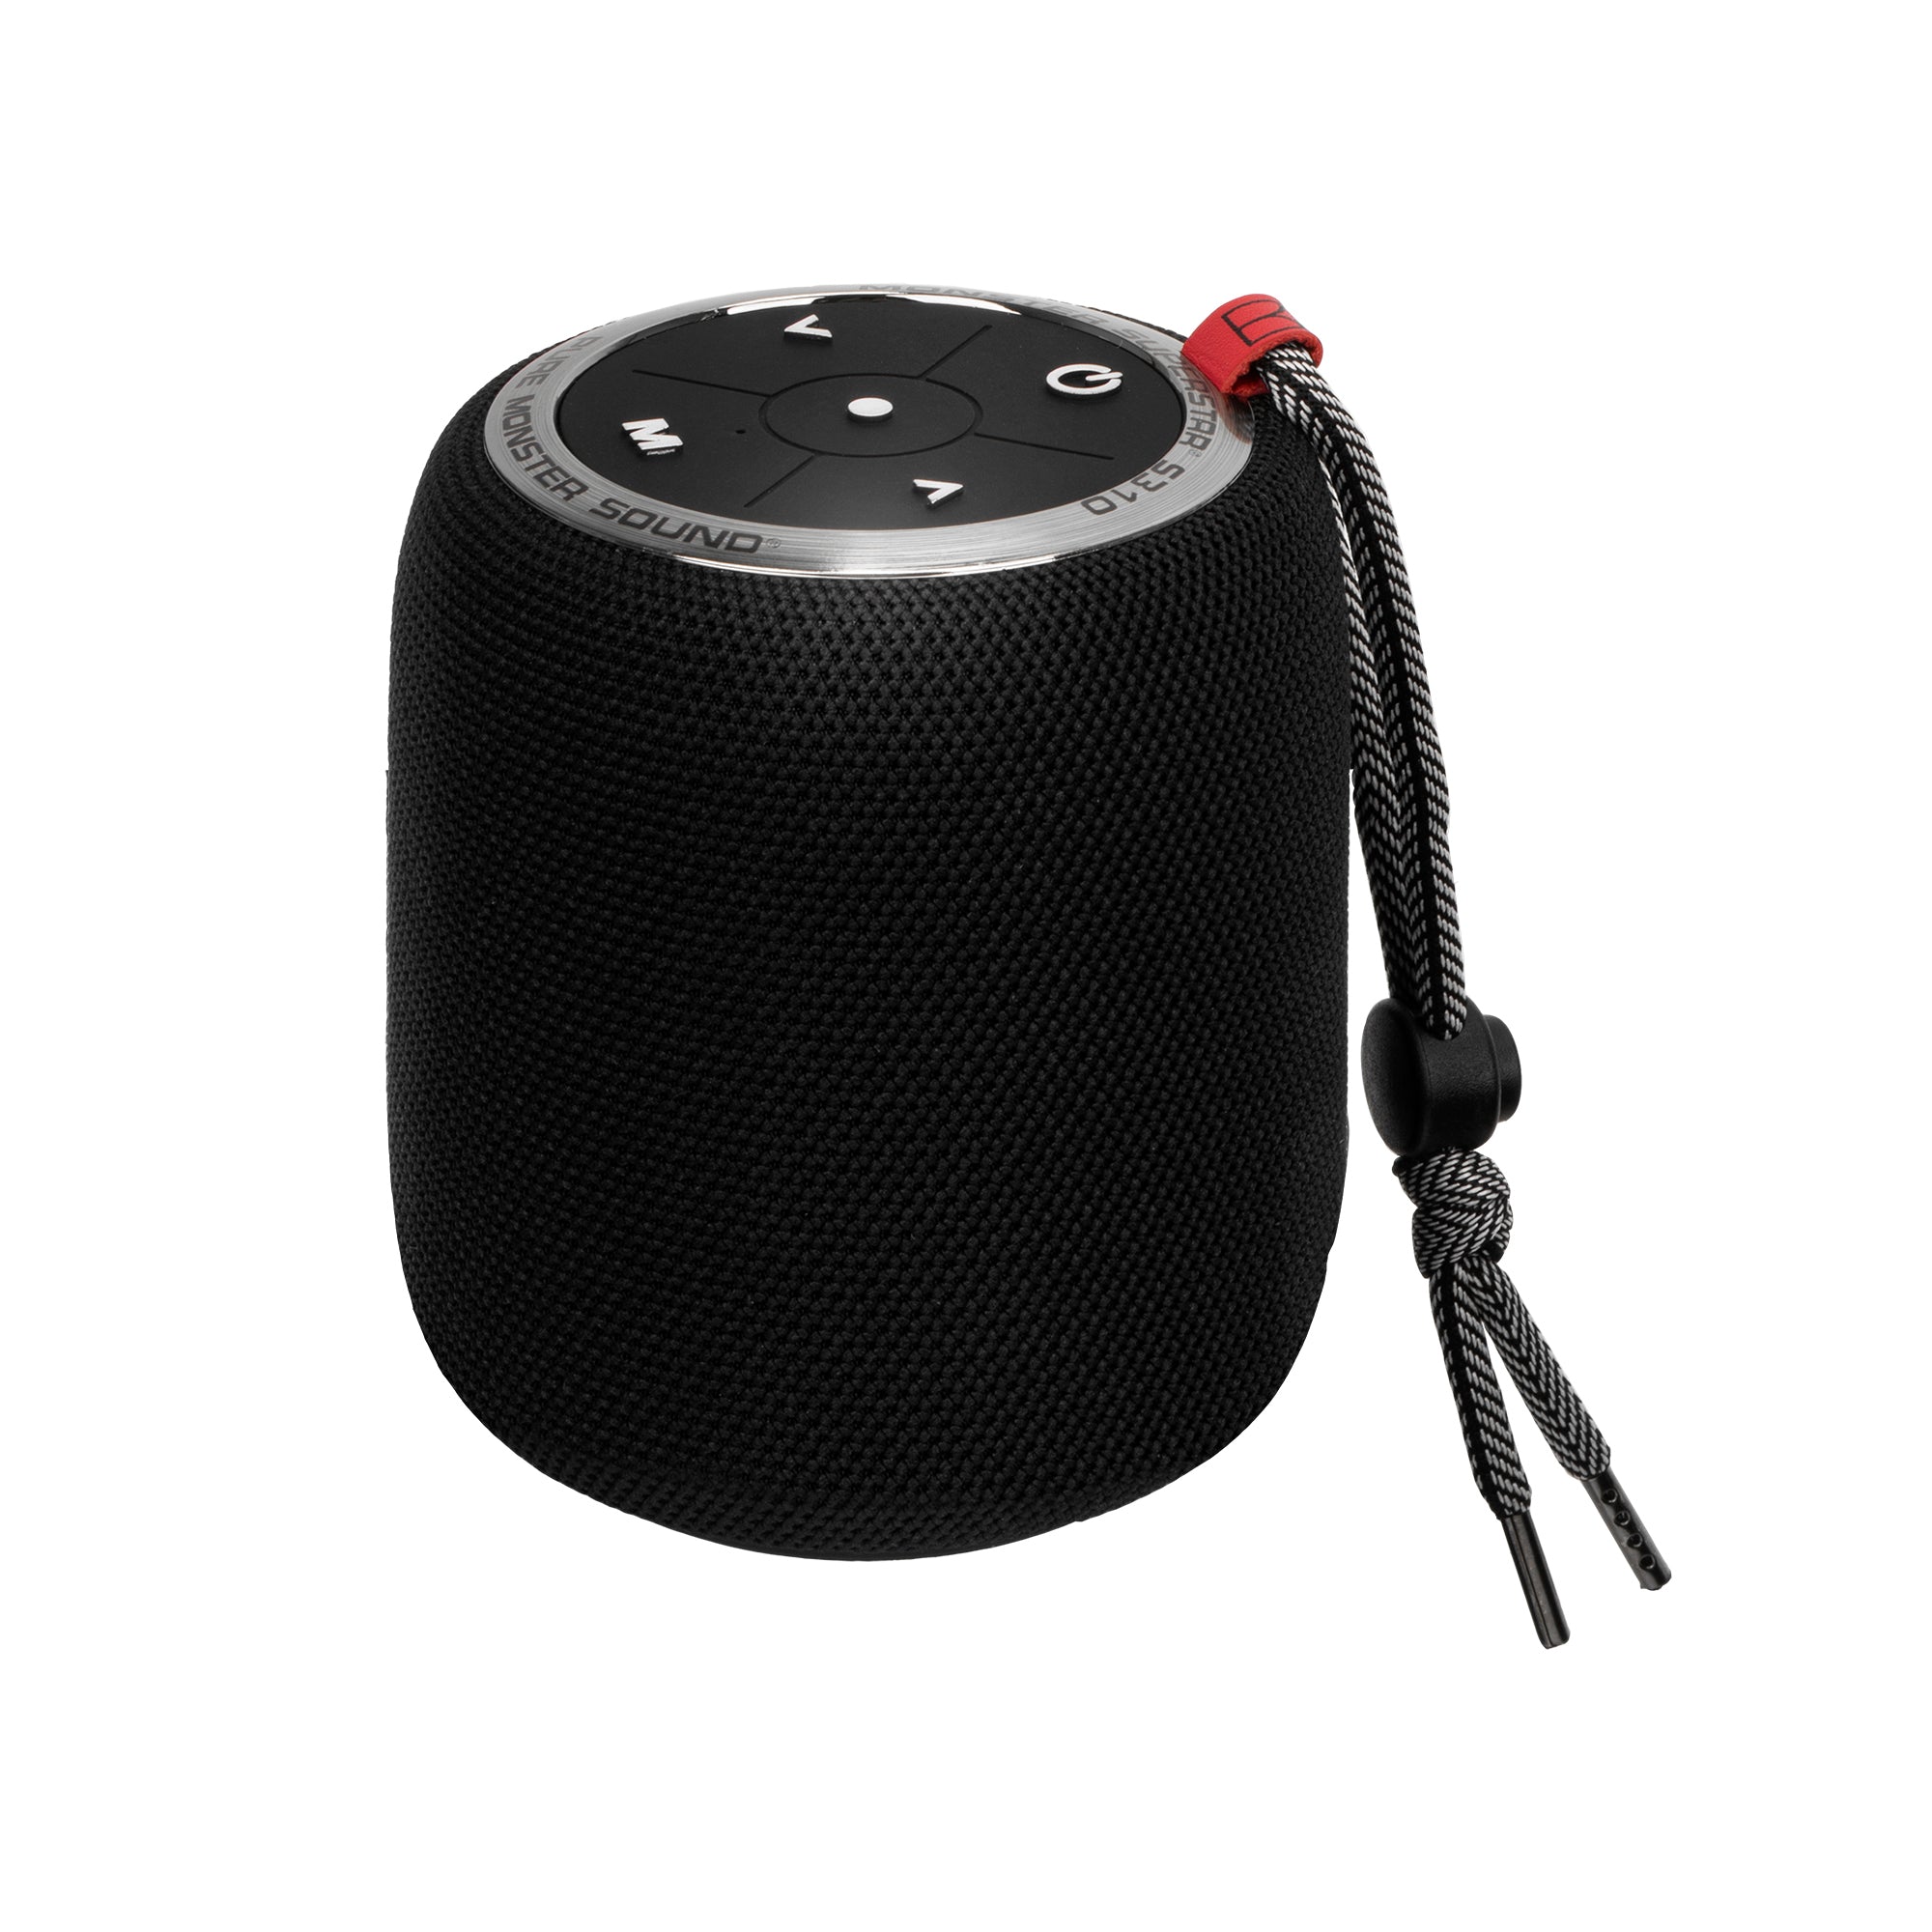 S110 Superstar Speaker Kit